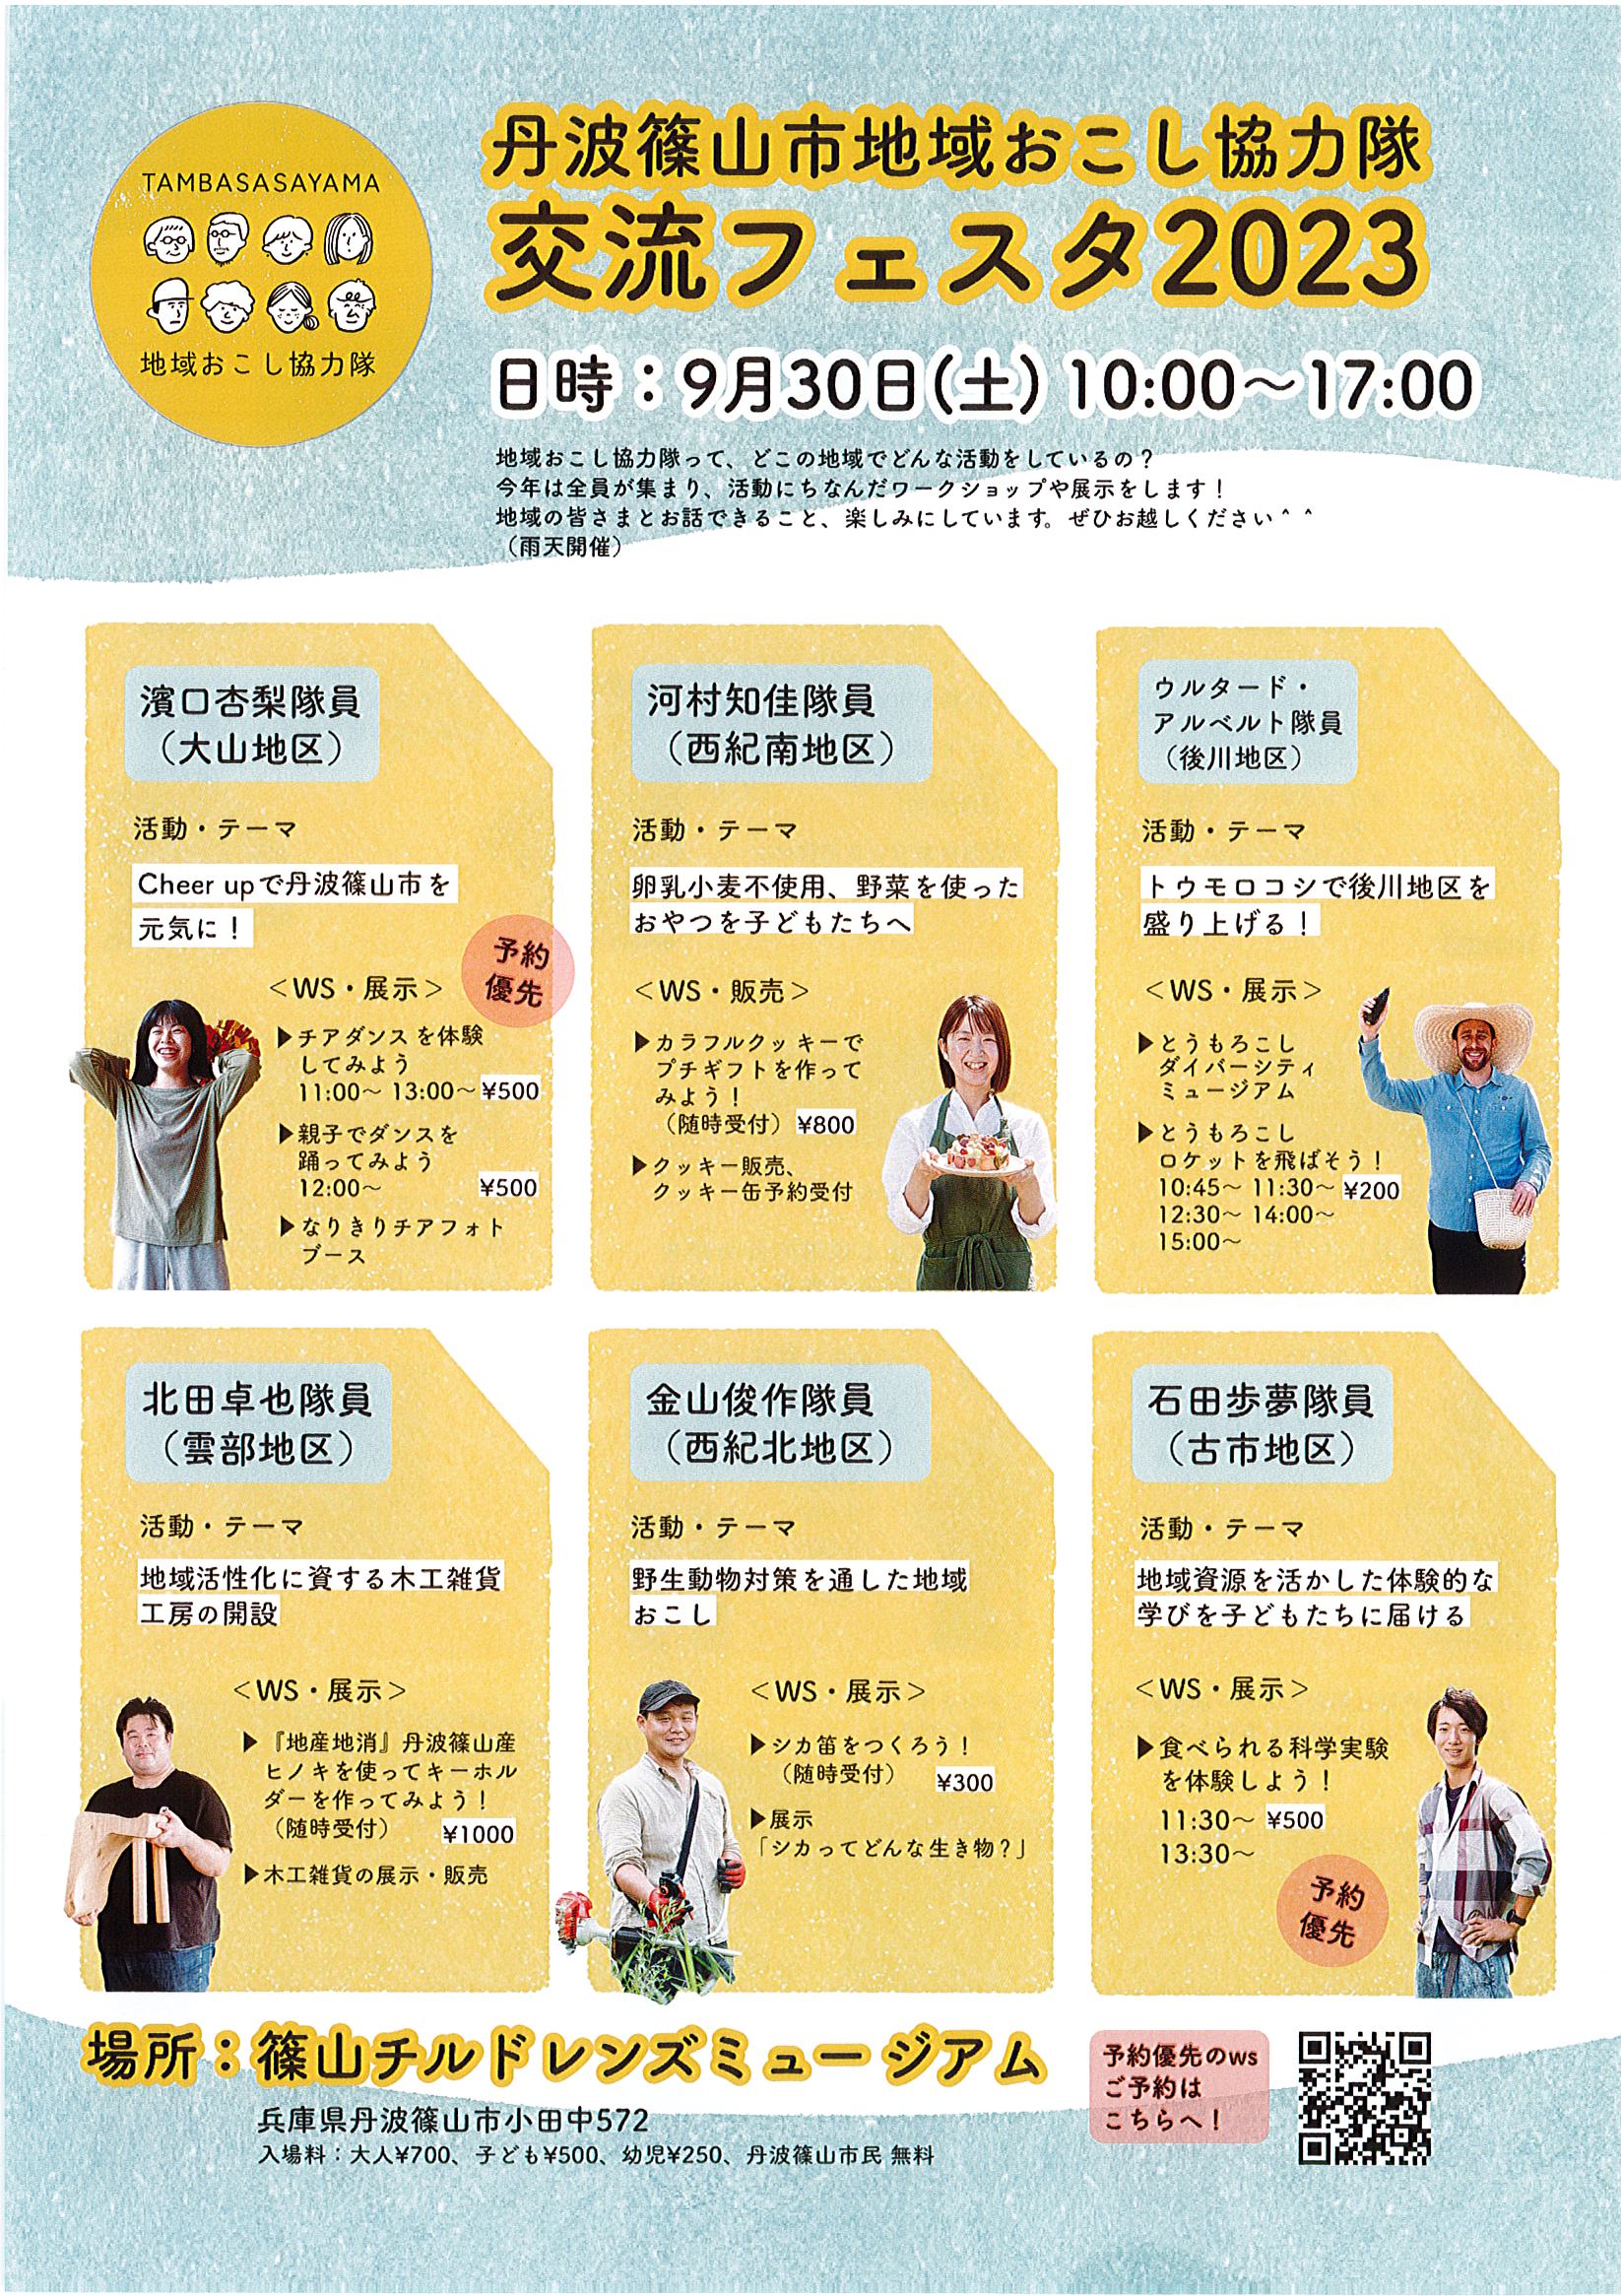 ９月３０日丹波篠山市地域おこし協力隊交流フェスタ2023が開催されます。